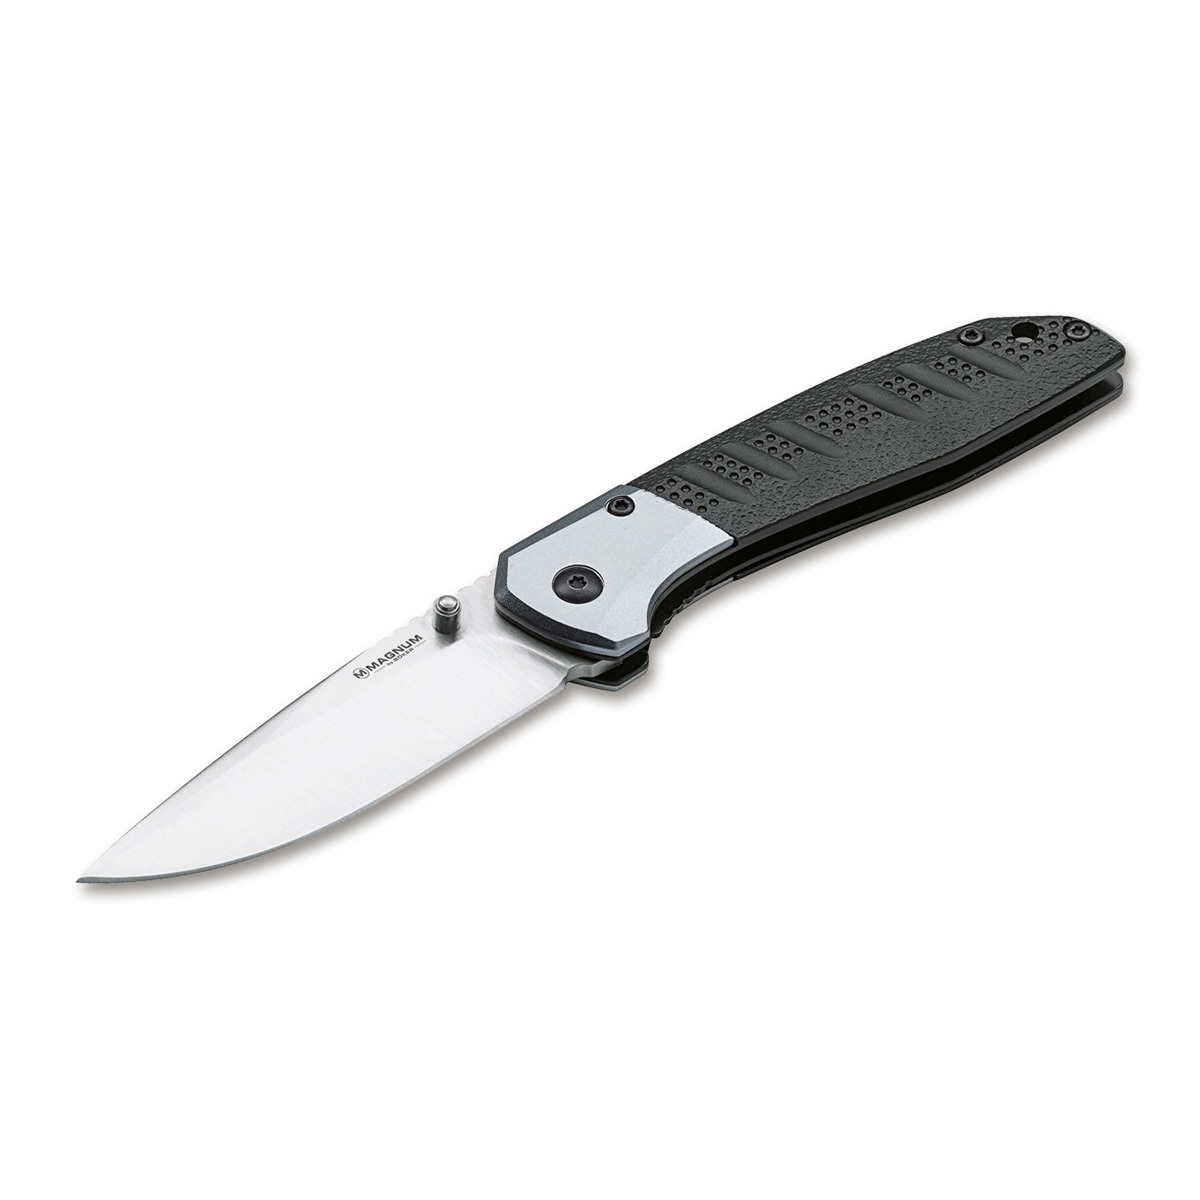 Нож складной Boker Advance pro edc, сталь 440C, рукоять алюминий нож cold steel finn bear 20pc сталь 4116 рукоять полипропилен